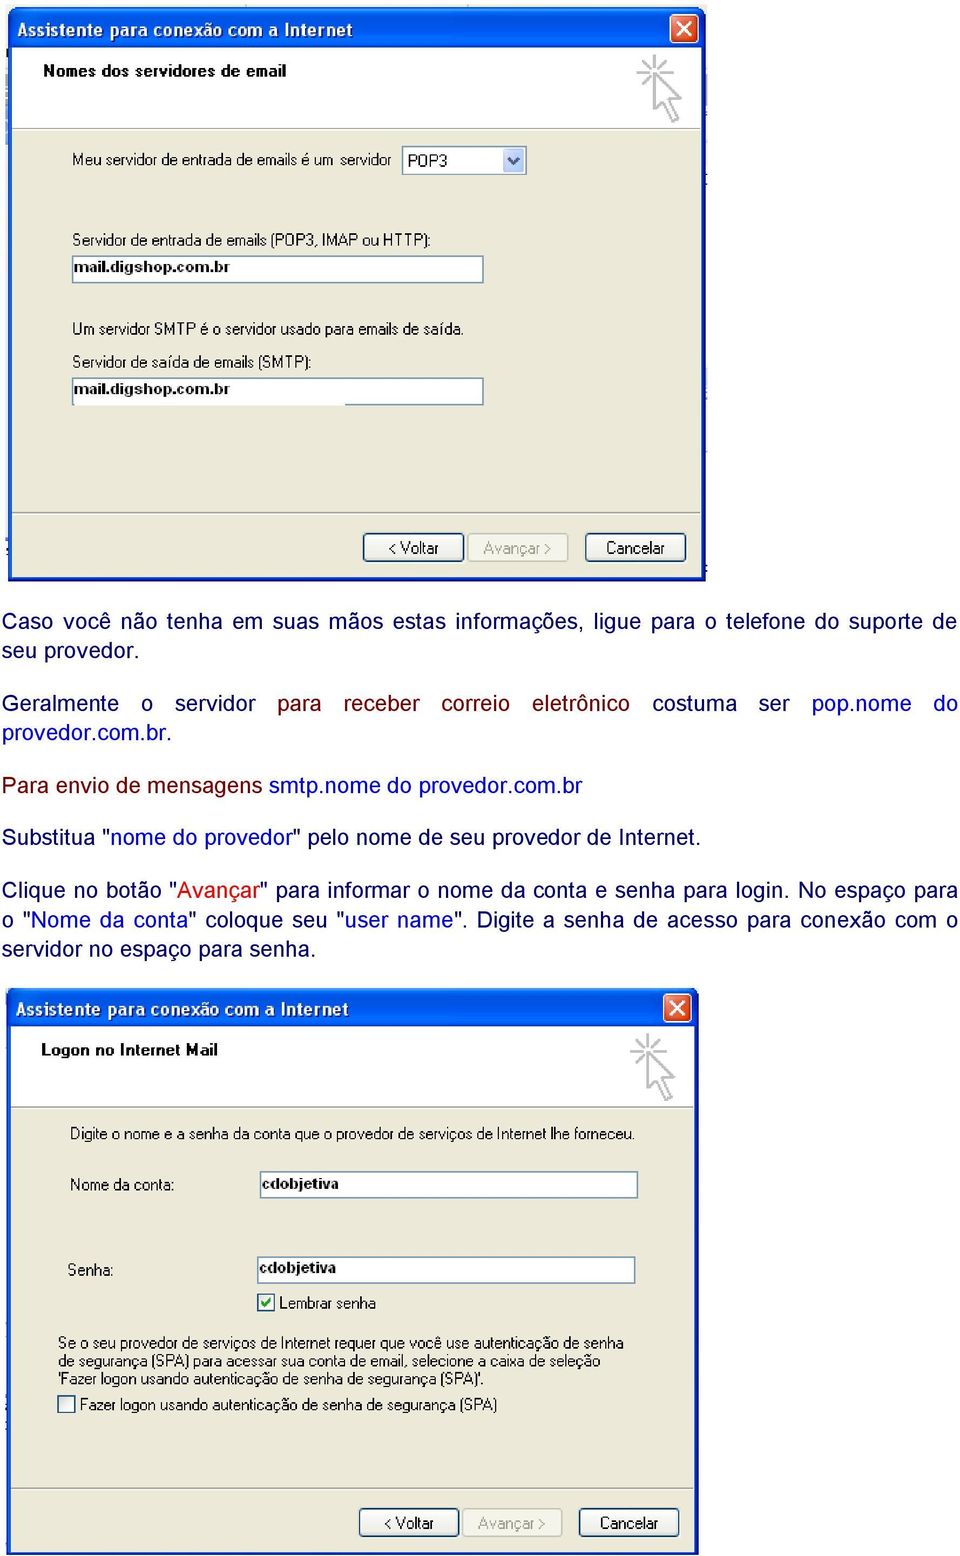 nome do provedor.com.br Substitua "nome do provedor" pelo nome de seu provedor de Internet.